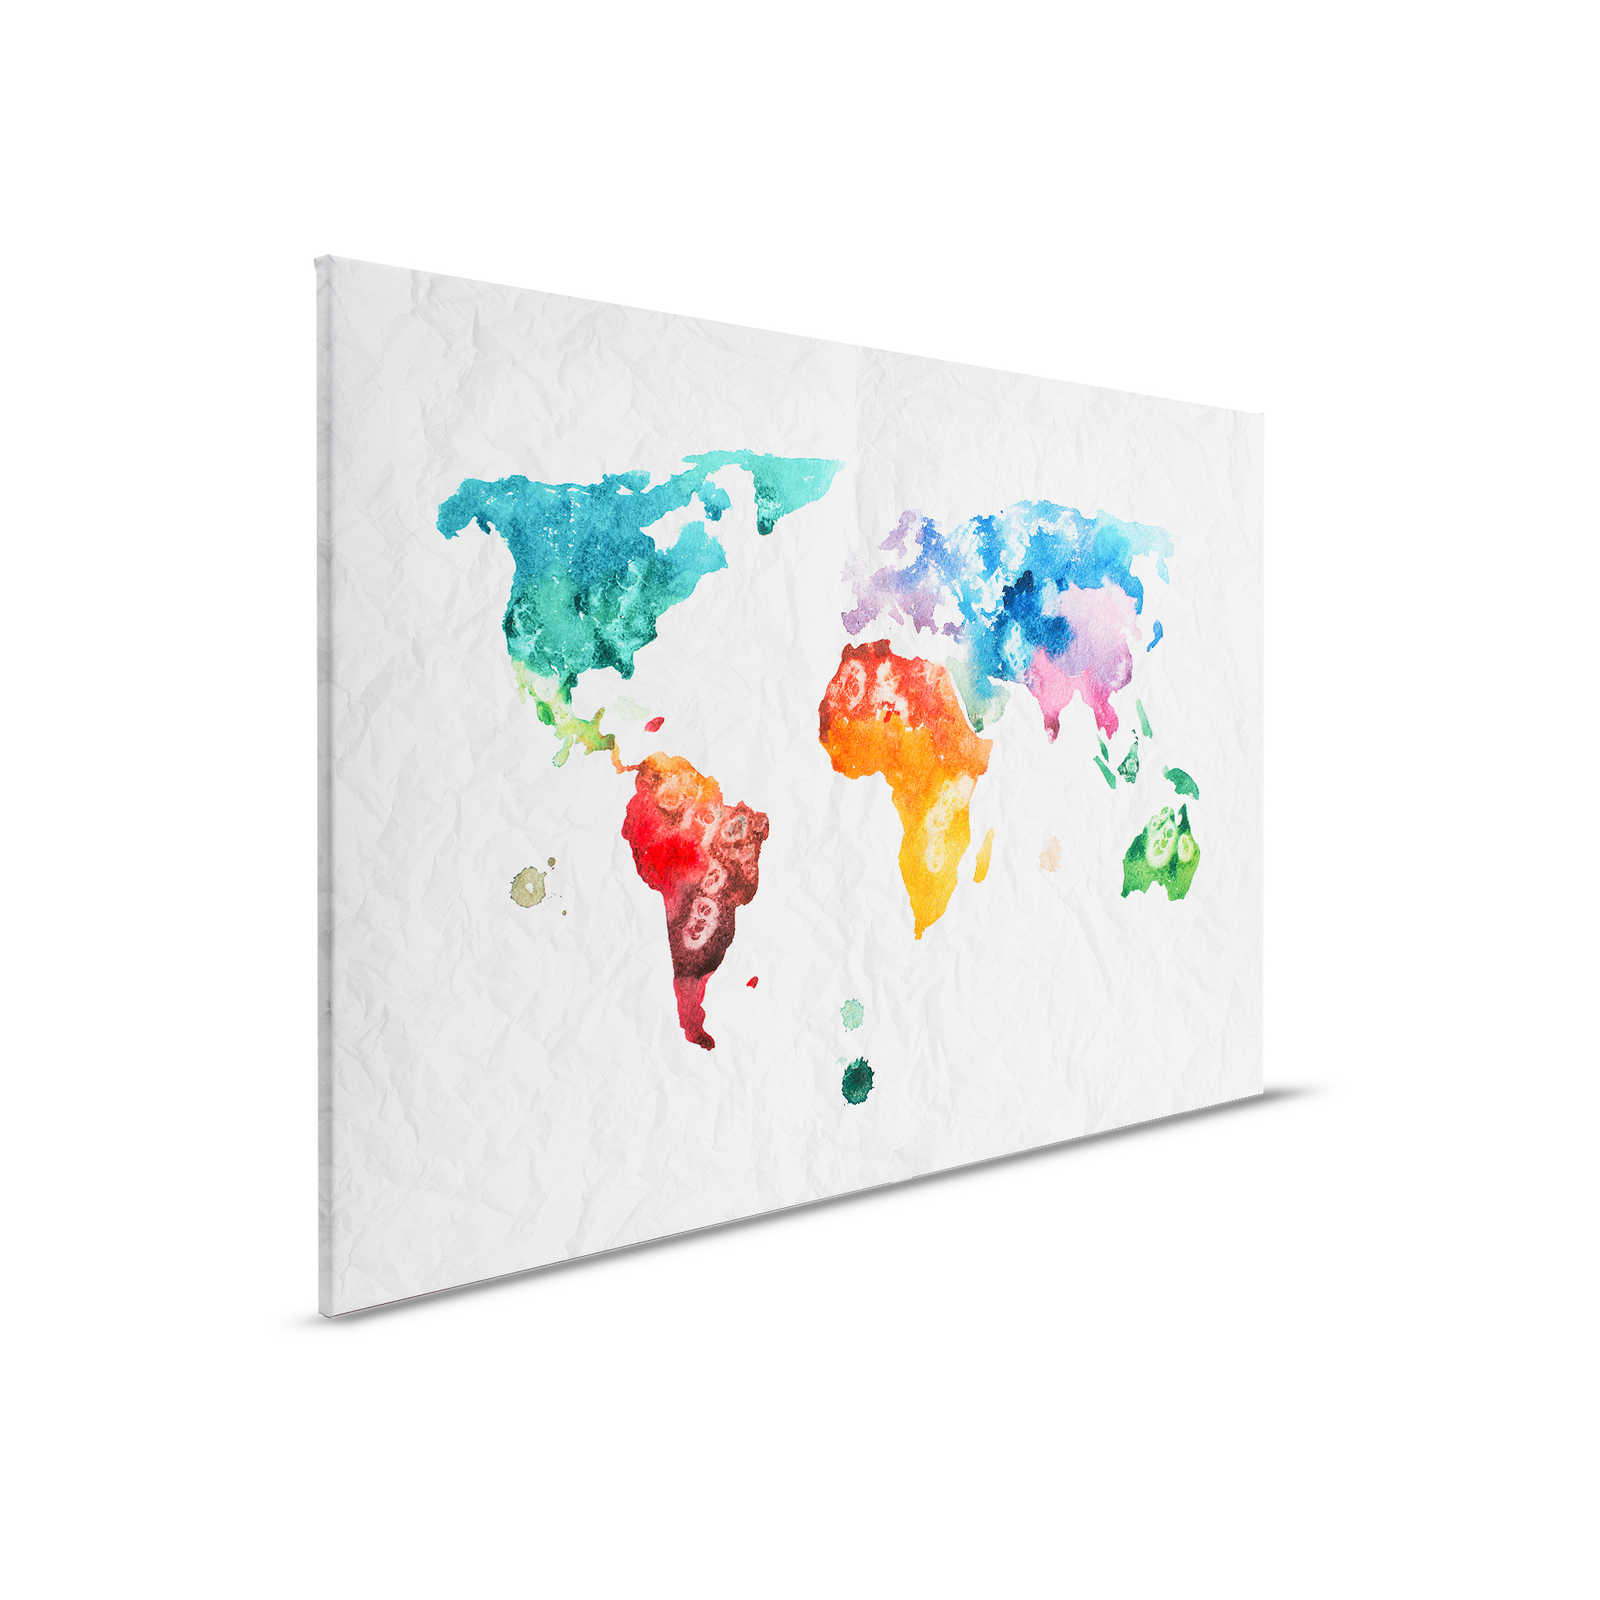 Mappa del mondo su tela acquerellata - 0,90 m x 0,60 m
